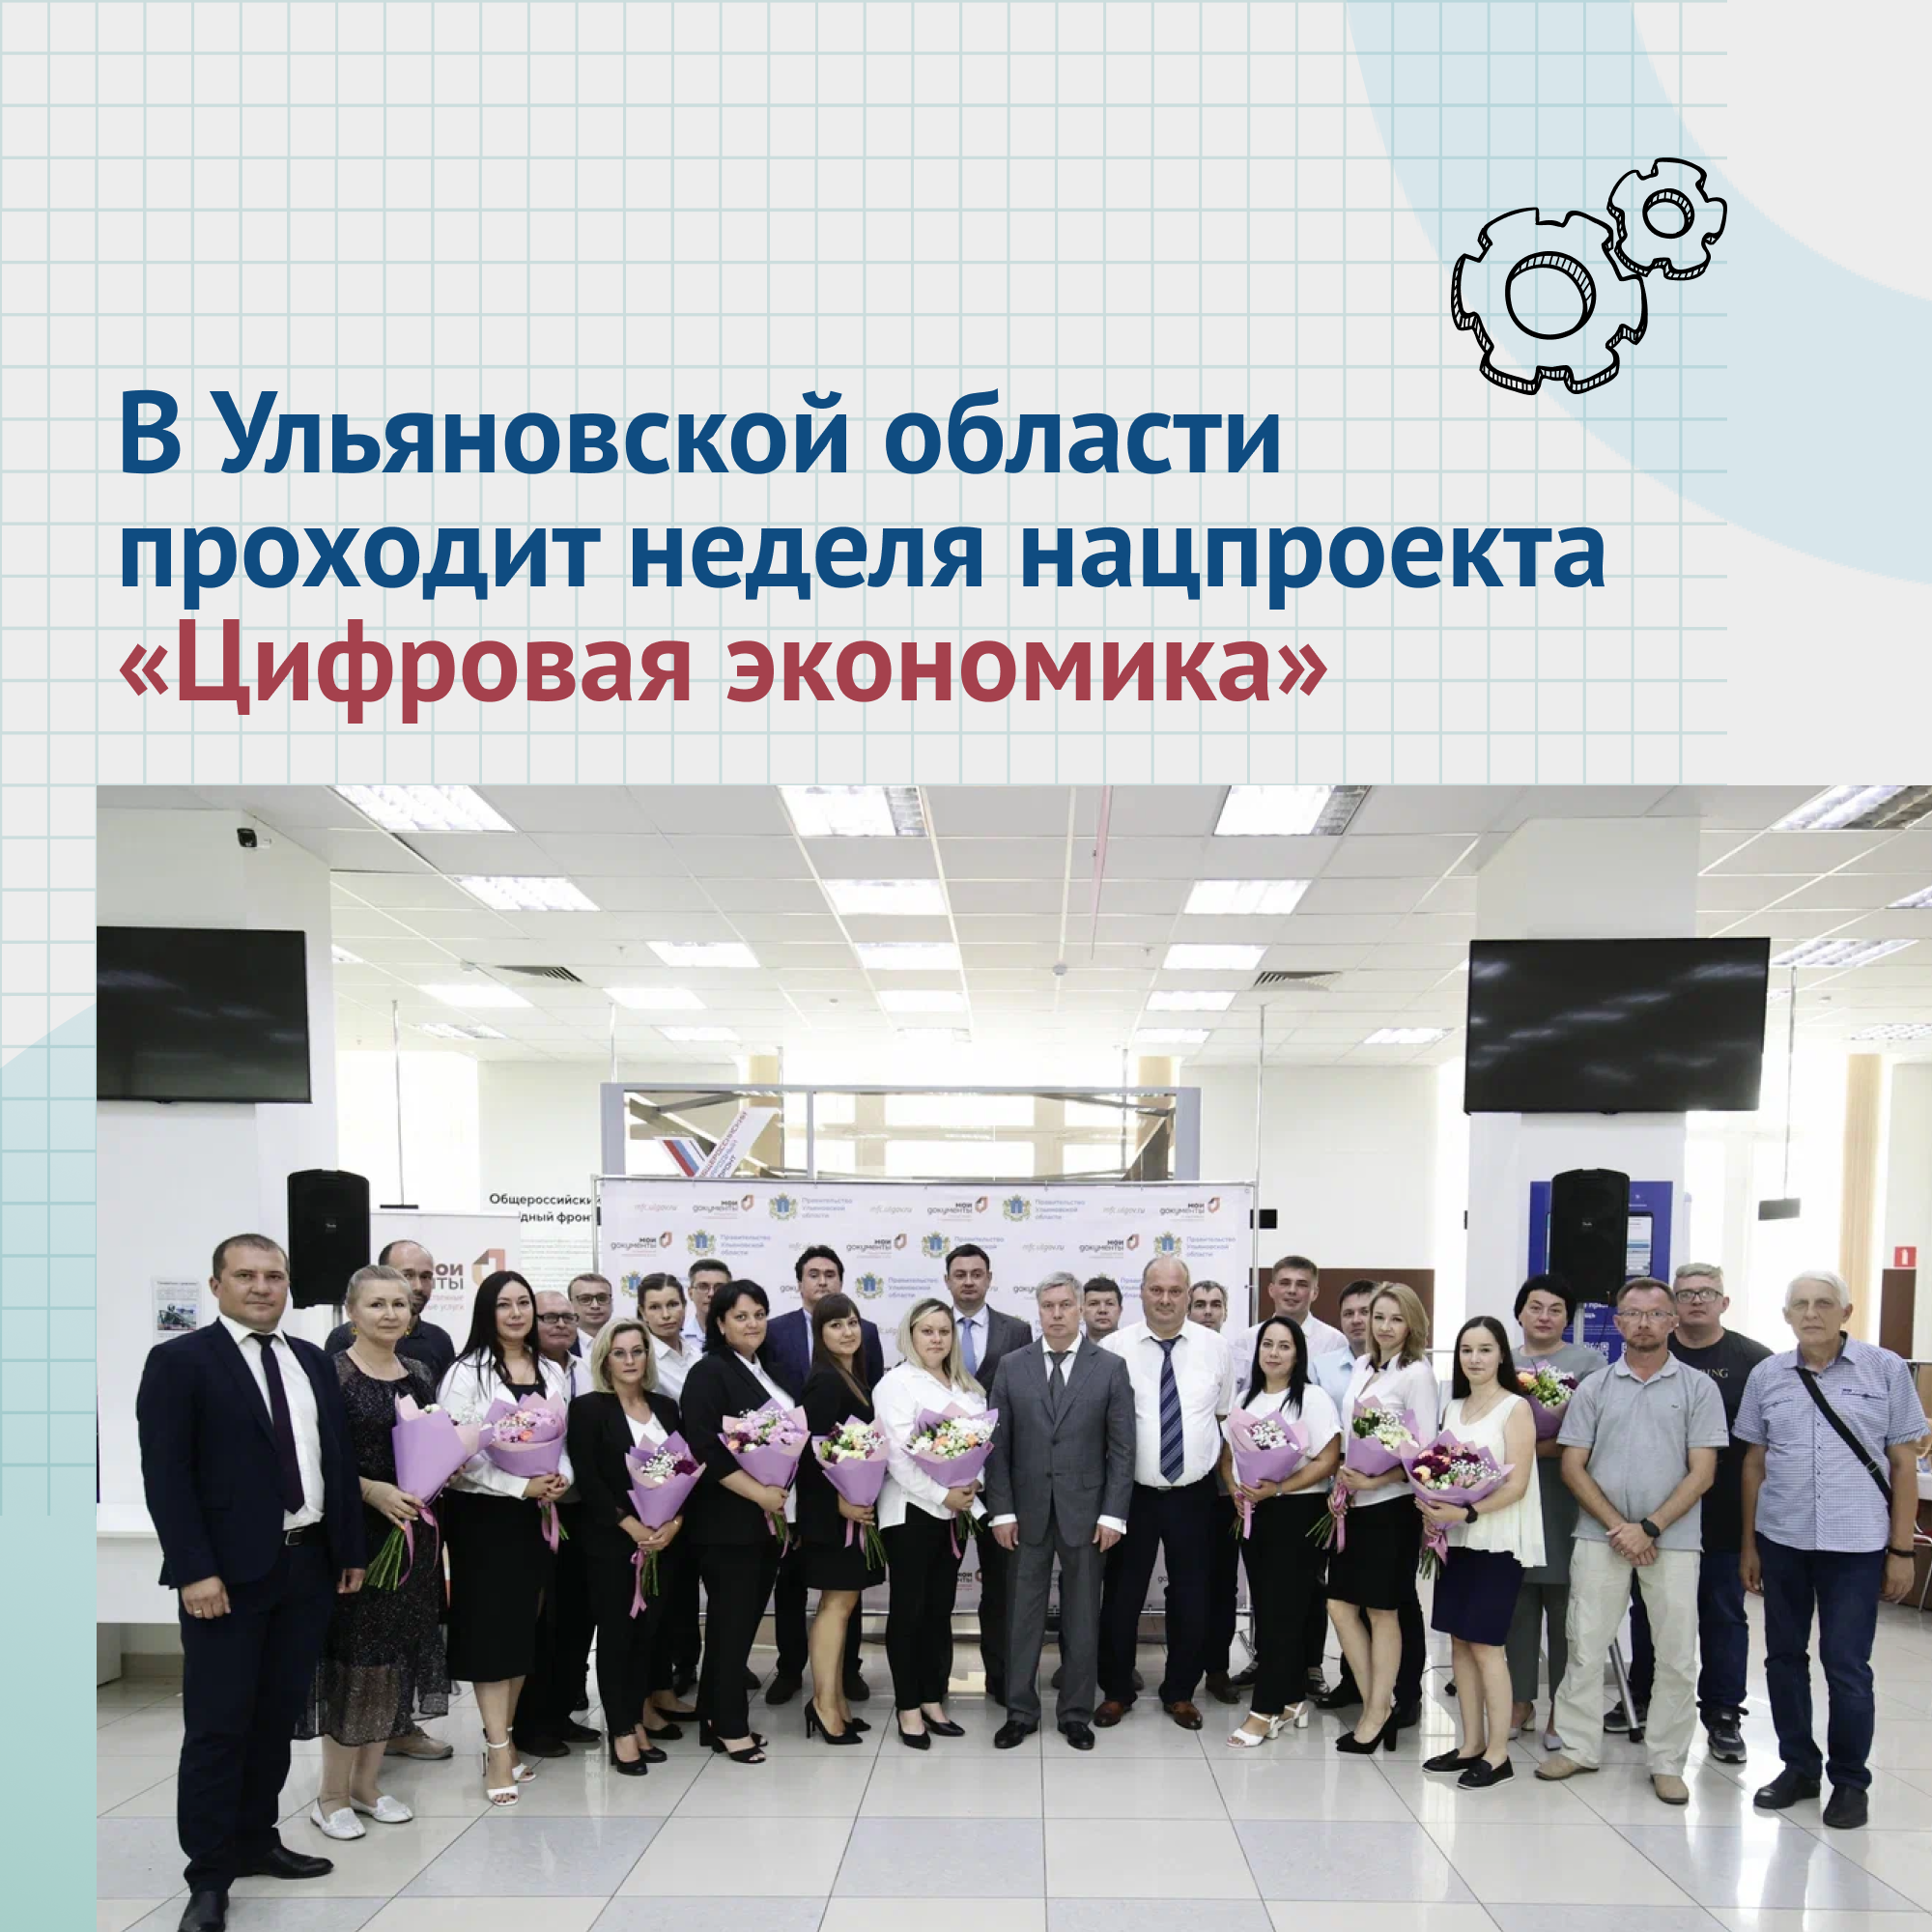 В Ульяновской области проводят неделю нацпроекта «Цифровая экономика».